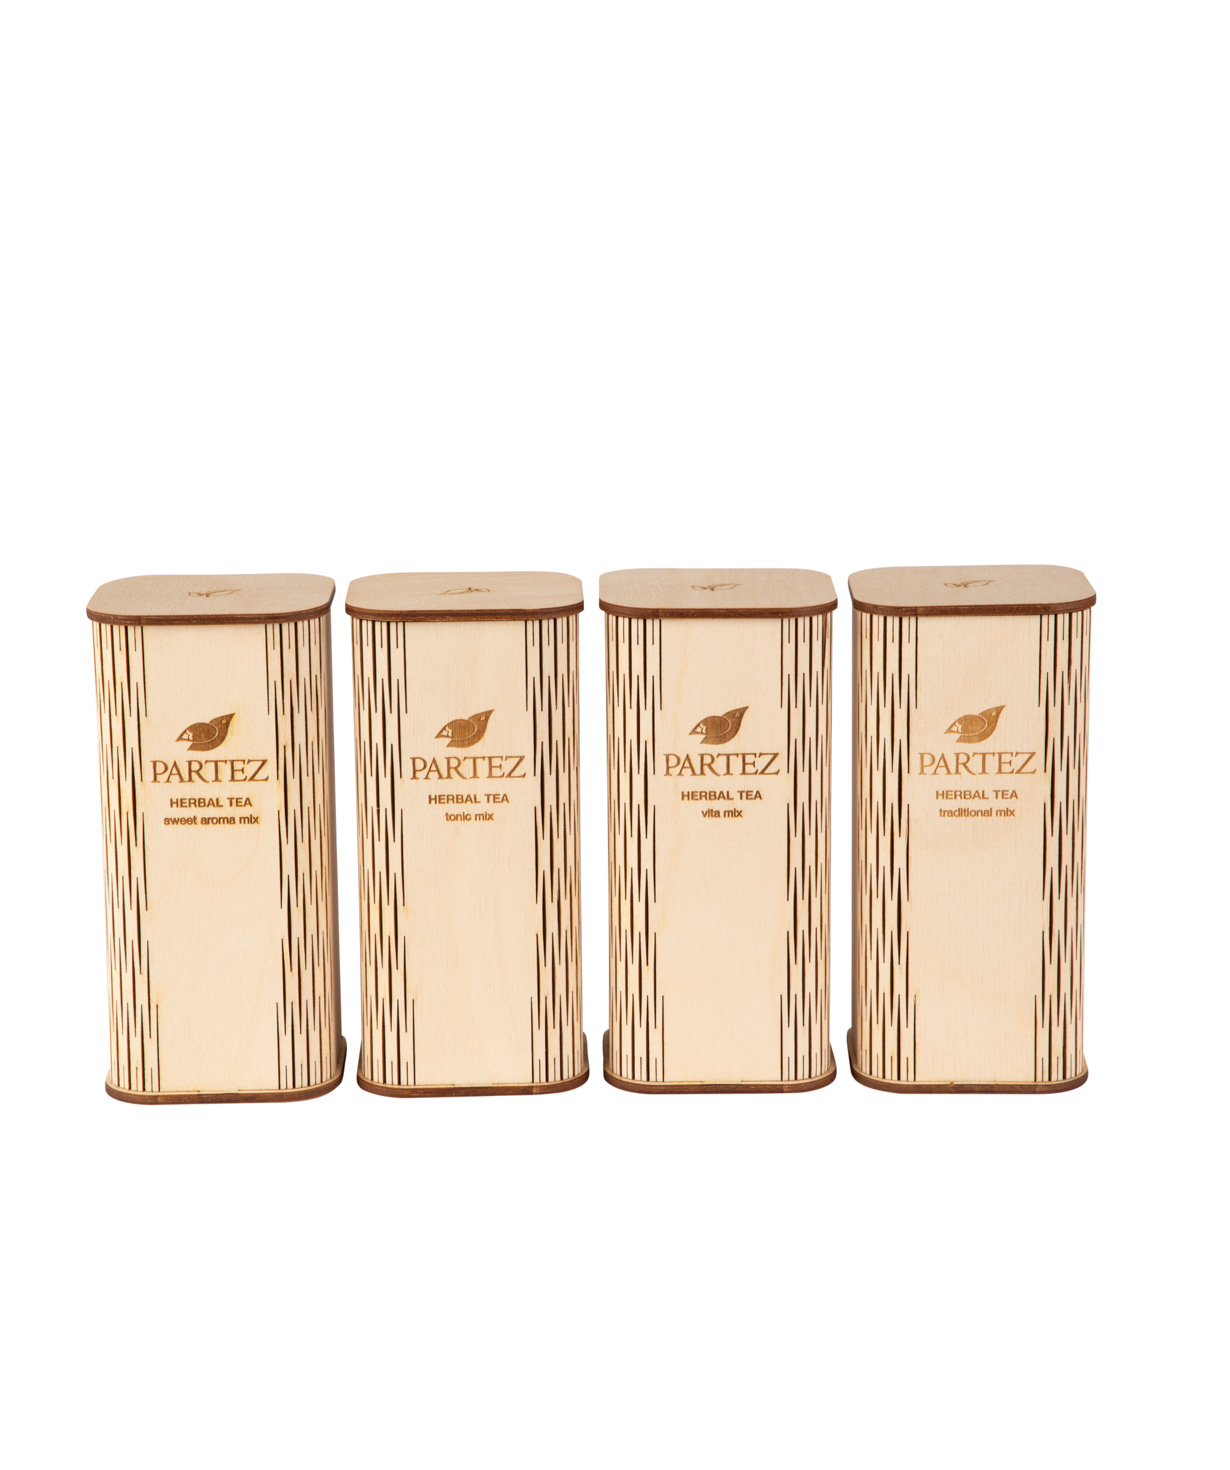 Tea `Partez` in a wooden souvenir box, tonic mix